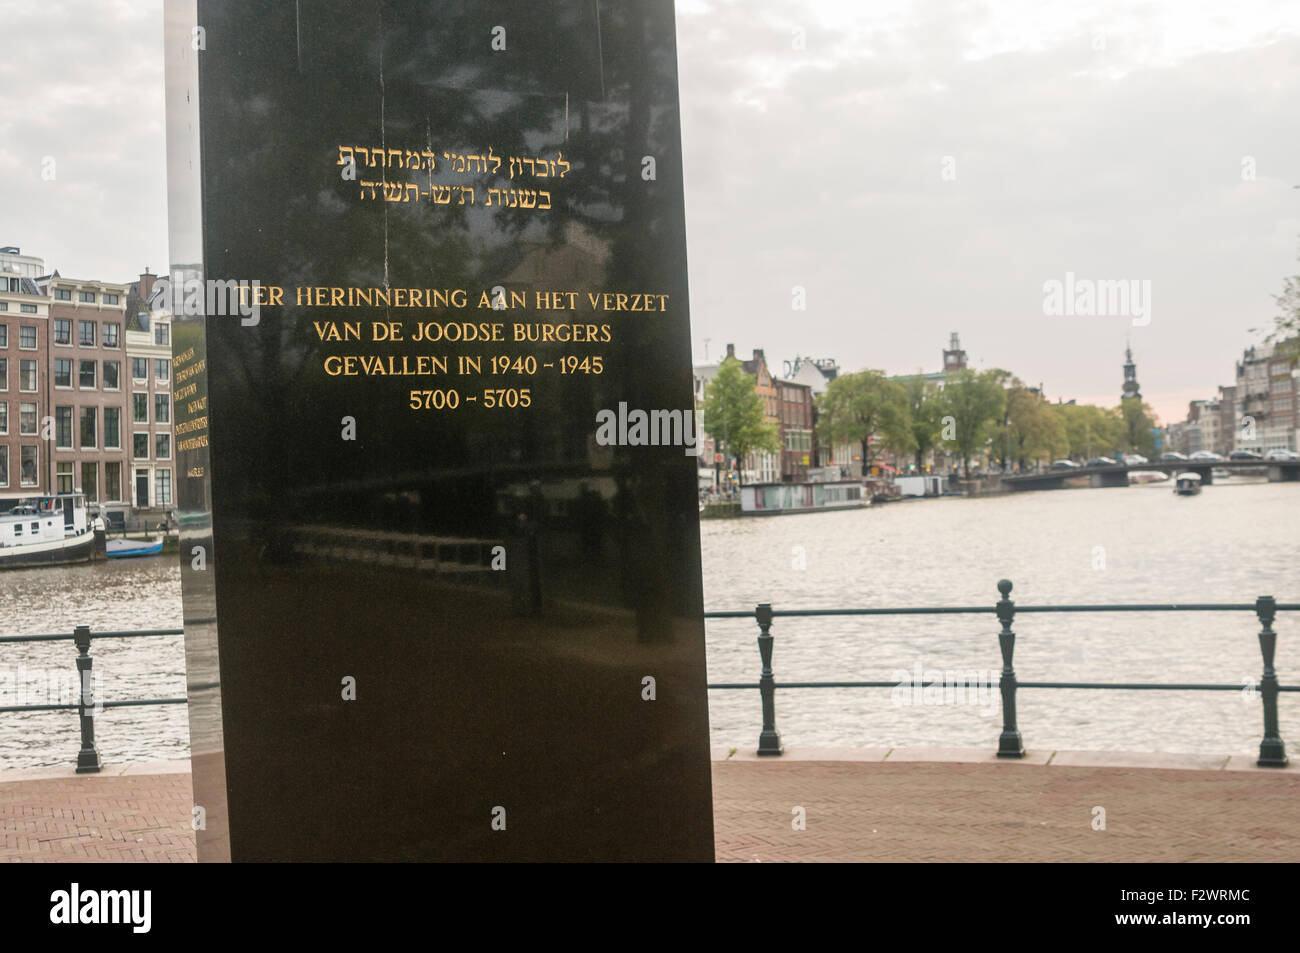 Memoriale per gli ebrei uccisi nella seconda guerra mondiale, compreso l'Anno Mundi anni dal calendario ebraico, Amsterdam Foto Stock